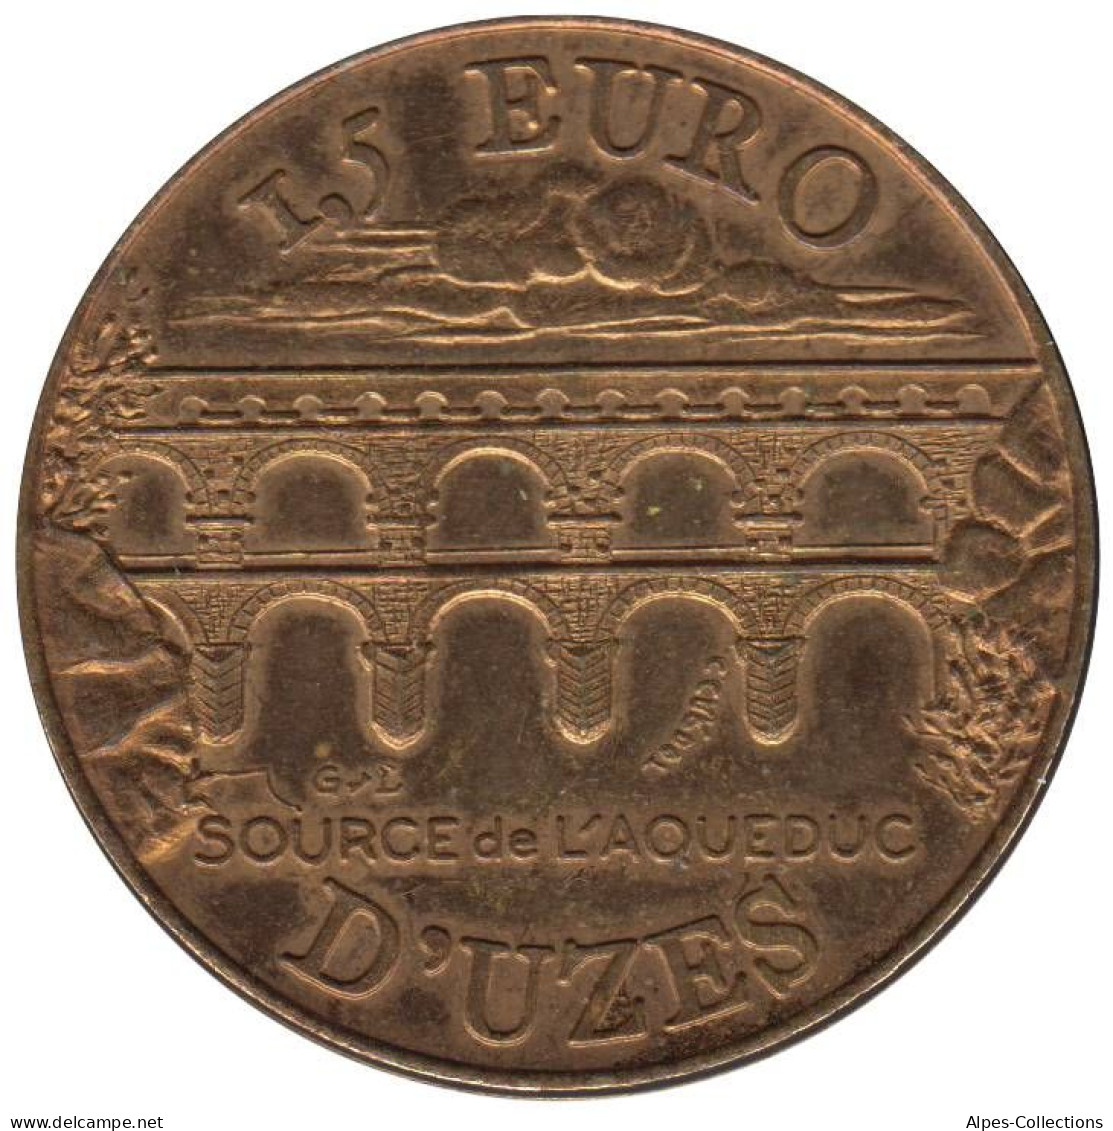 UZES - EU0015.1 - 1,5 EURO DES VILLES - Réf: NR - 1997 - Euros Des Villes